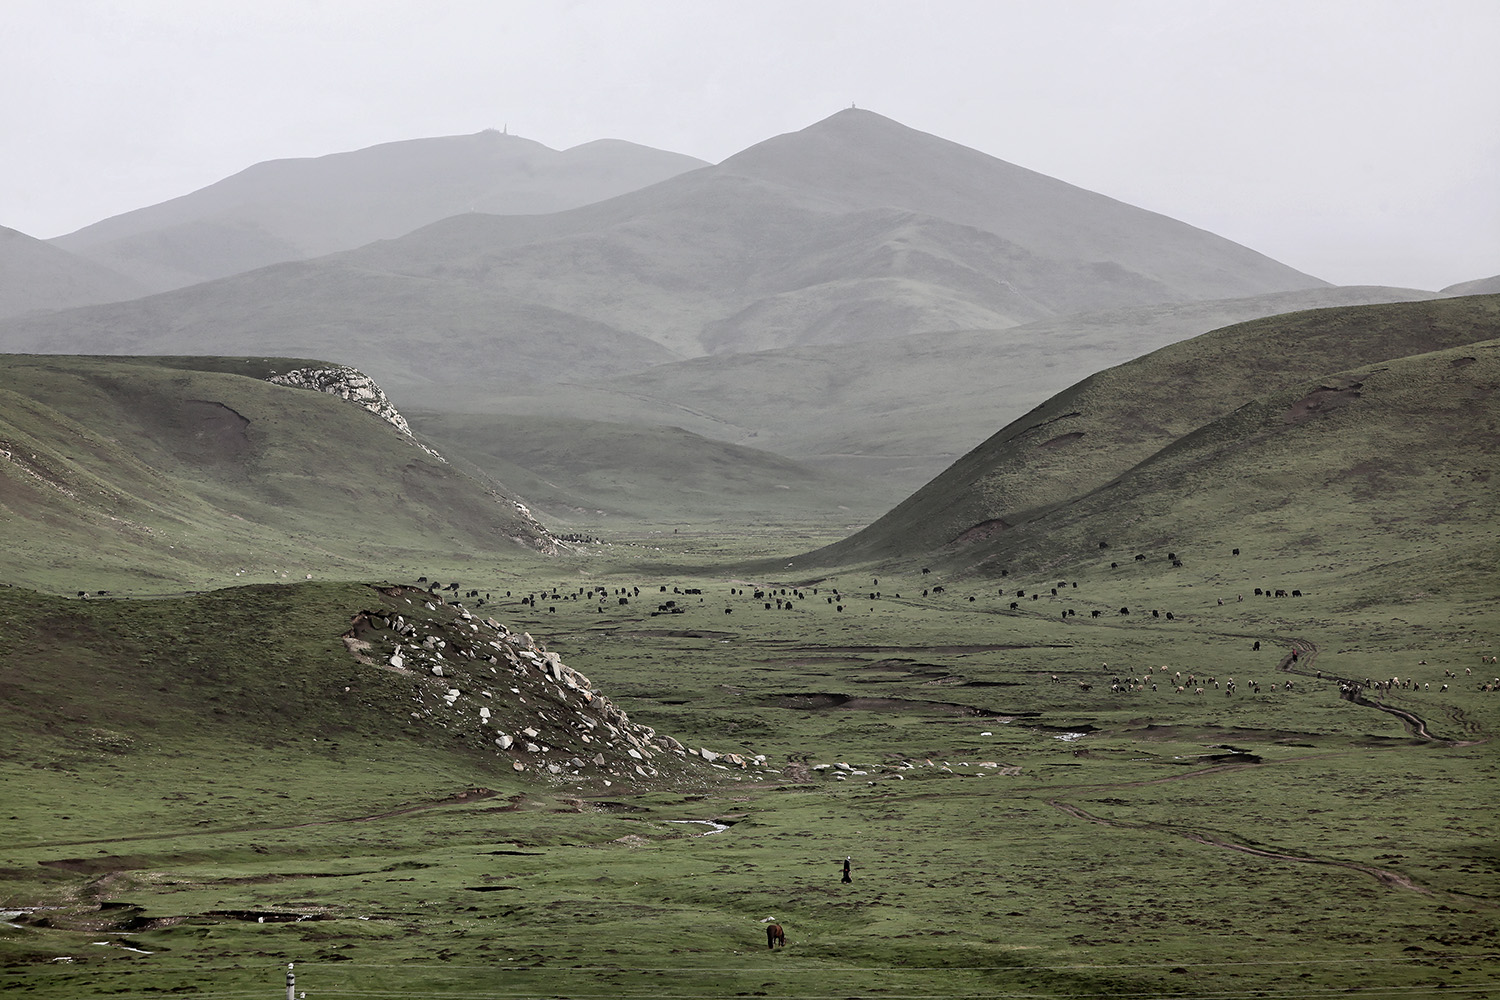  Nomads bringing their Yak home, Ritoma, Amdo, Tibet 